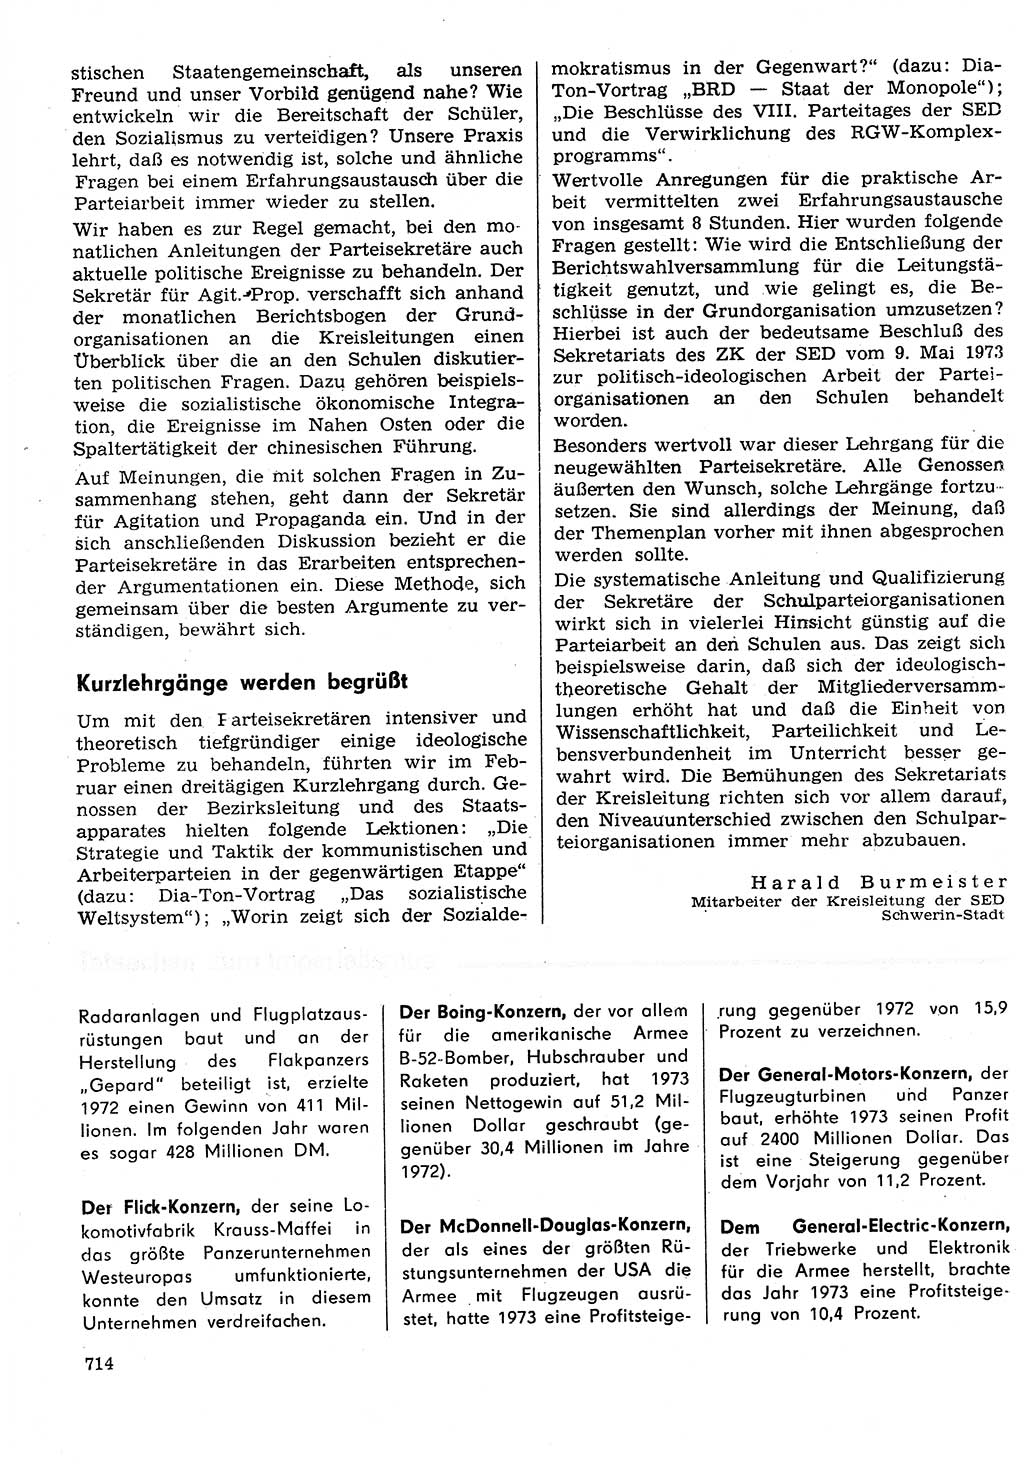 Neuer Weg (NW), Organ des Zentralkomitees (ZK) der SED (Sozialistische Einheitspartei Deutschlands) für Fragen des Parteilebens, 29. Jahrgang [Deutsche Demokratische Republik (DDR)] 1974, Seite 714 (NW ZK SED DDR 1974, S. 714)